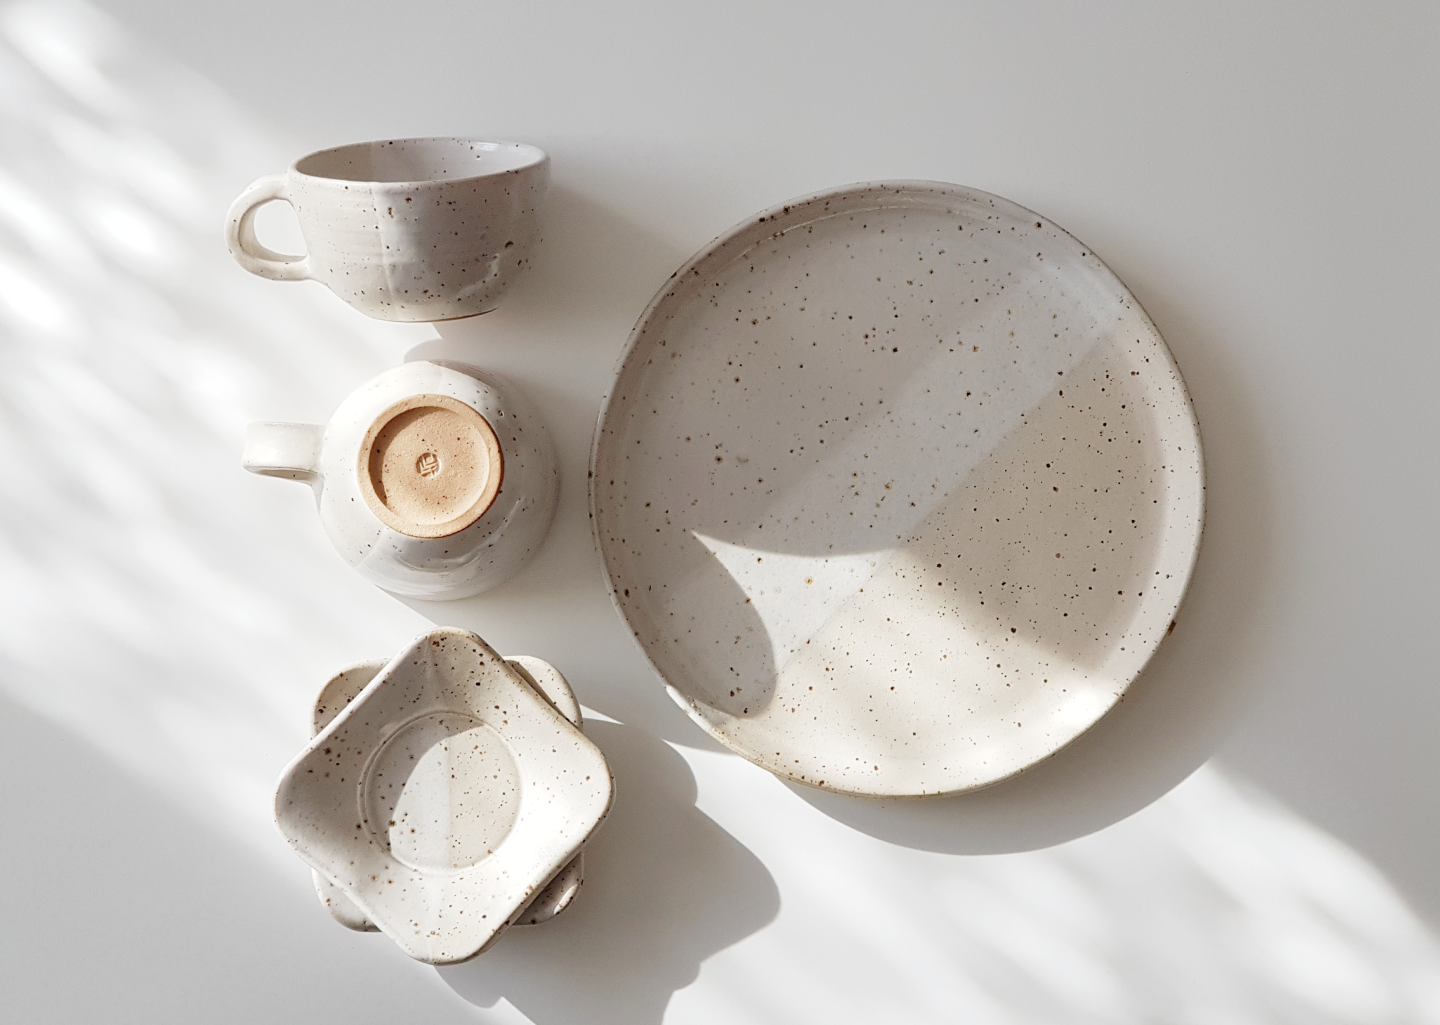 Buy handmade pottery from Diana.